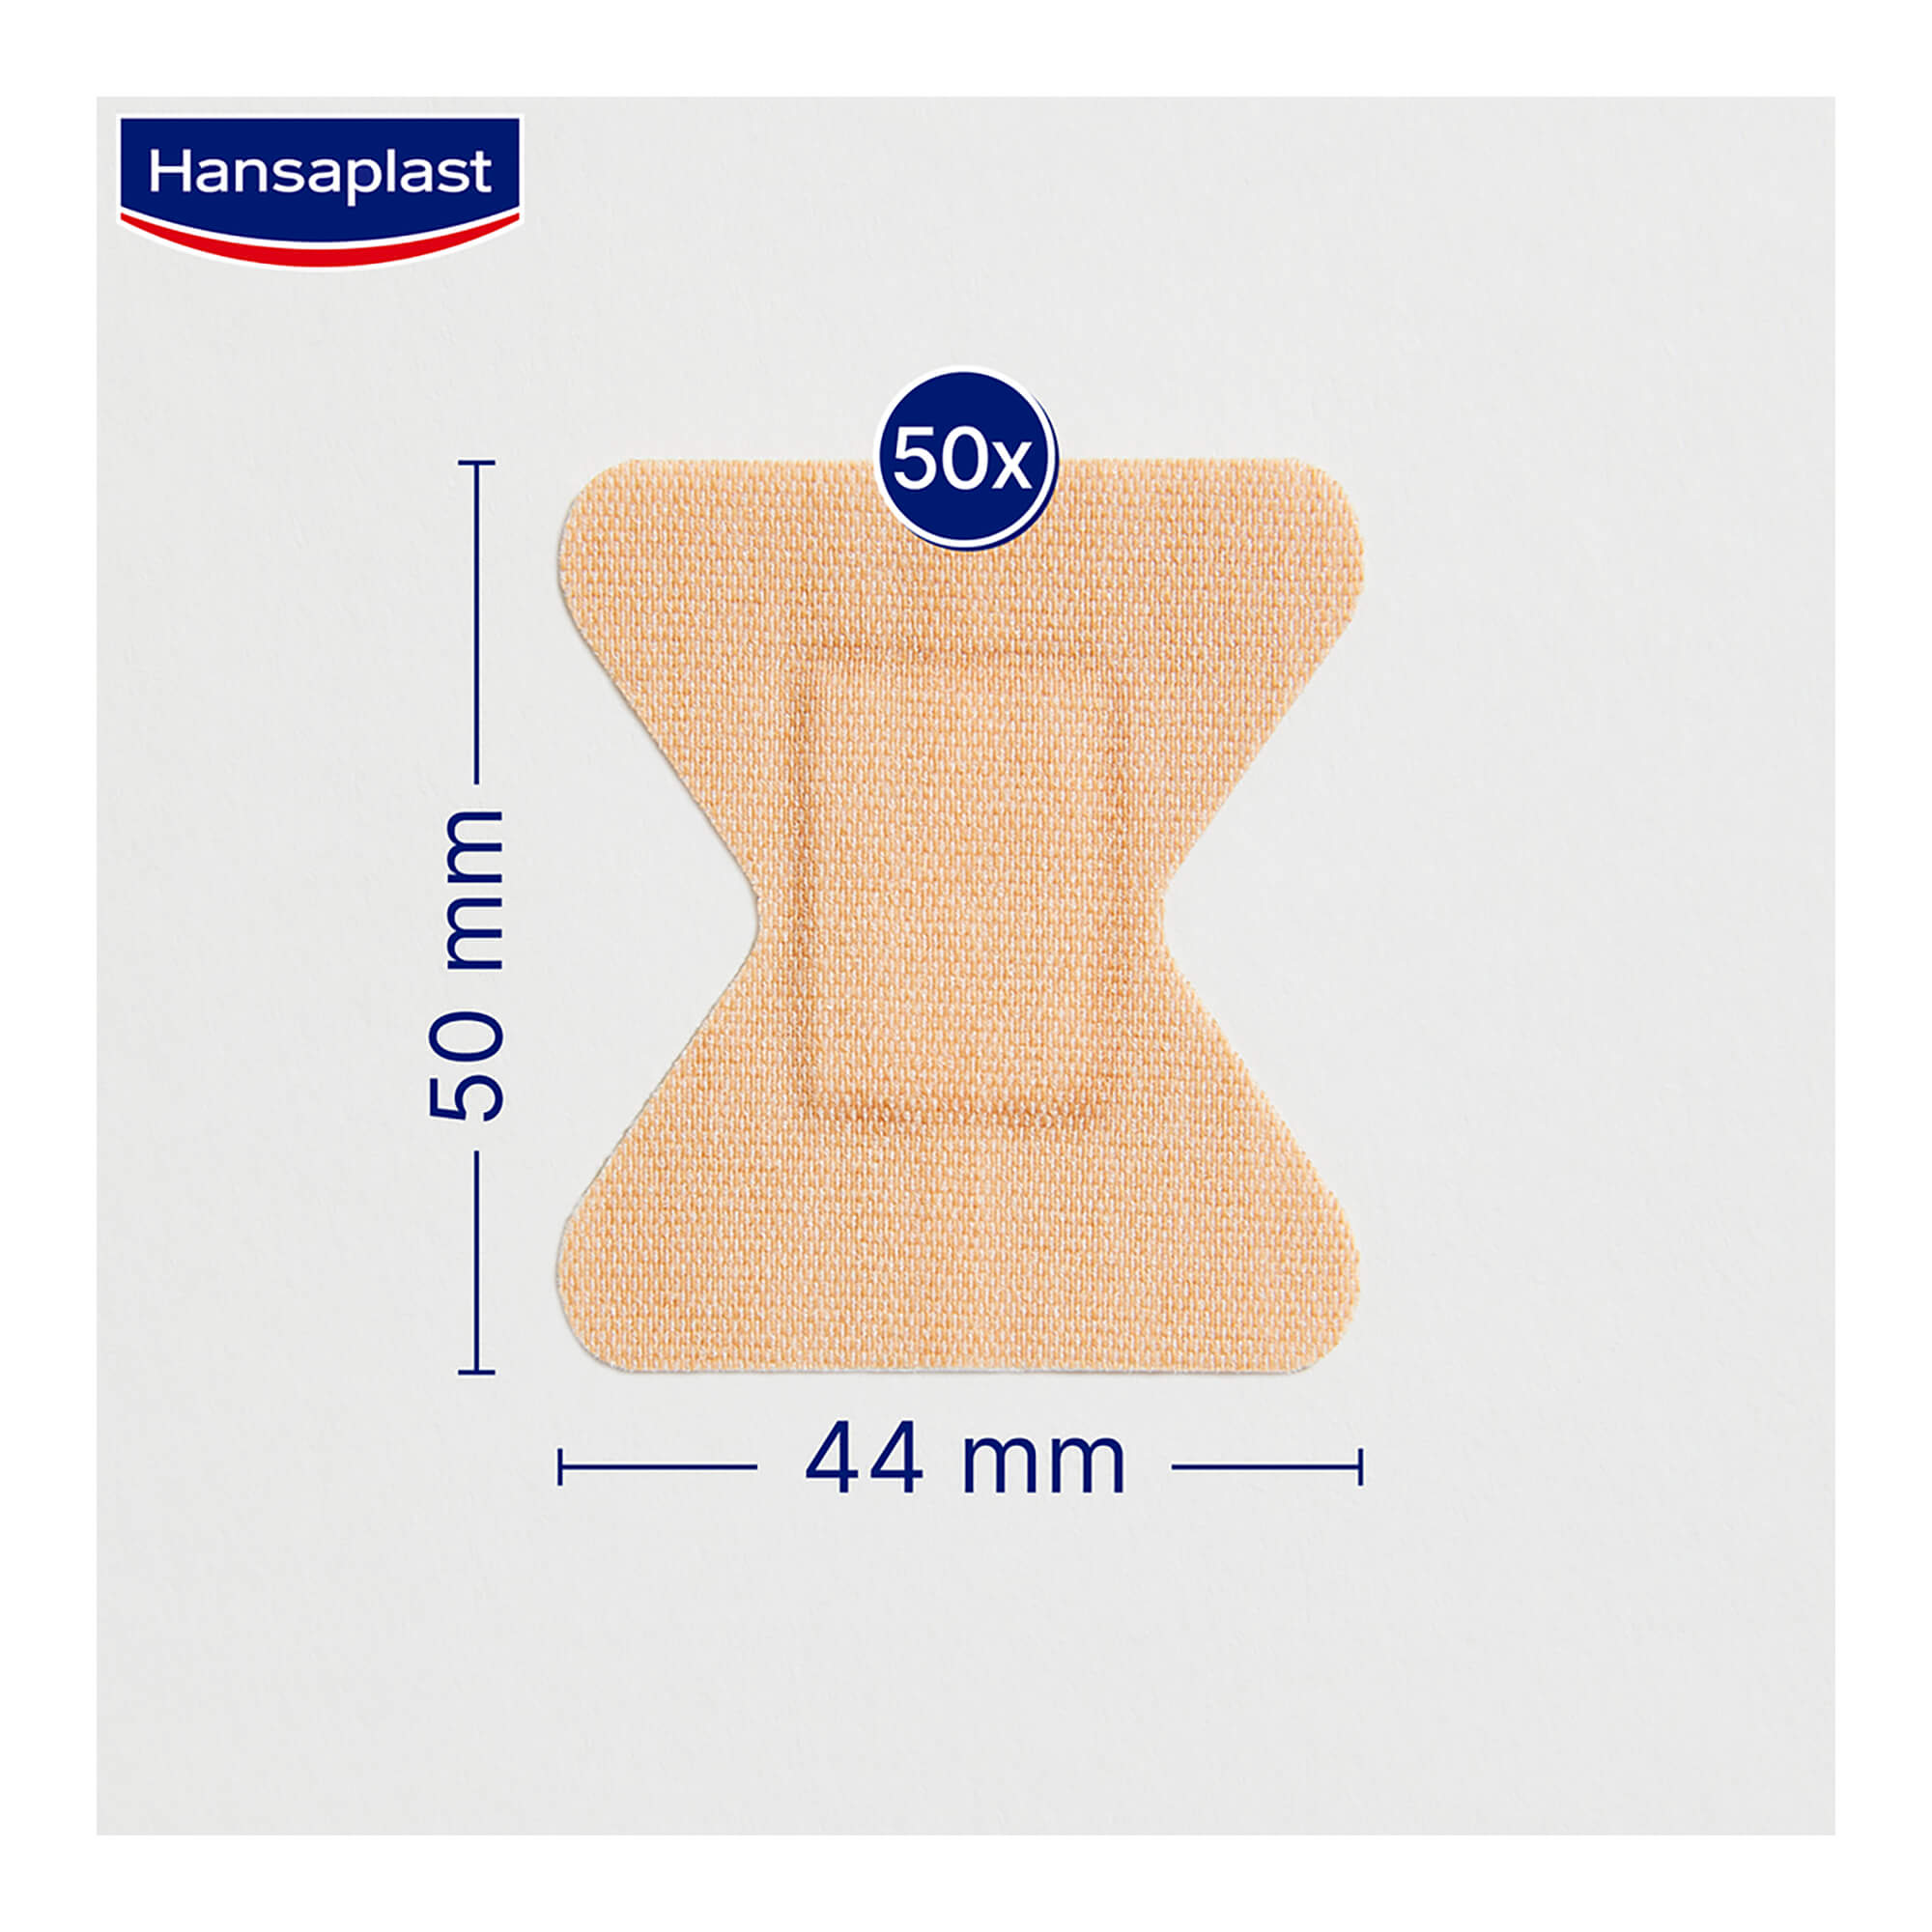 Grafik Hansaplast Elastic Fingerkuppenpflaster Maße: 50x44 mm